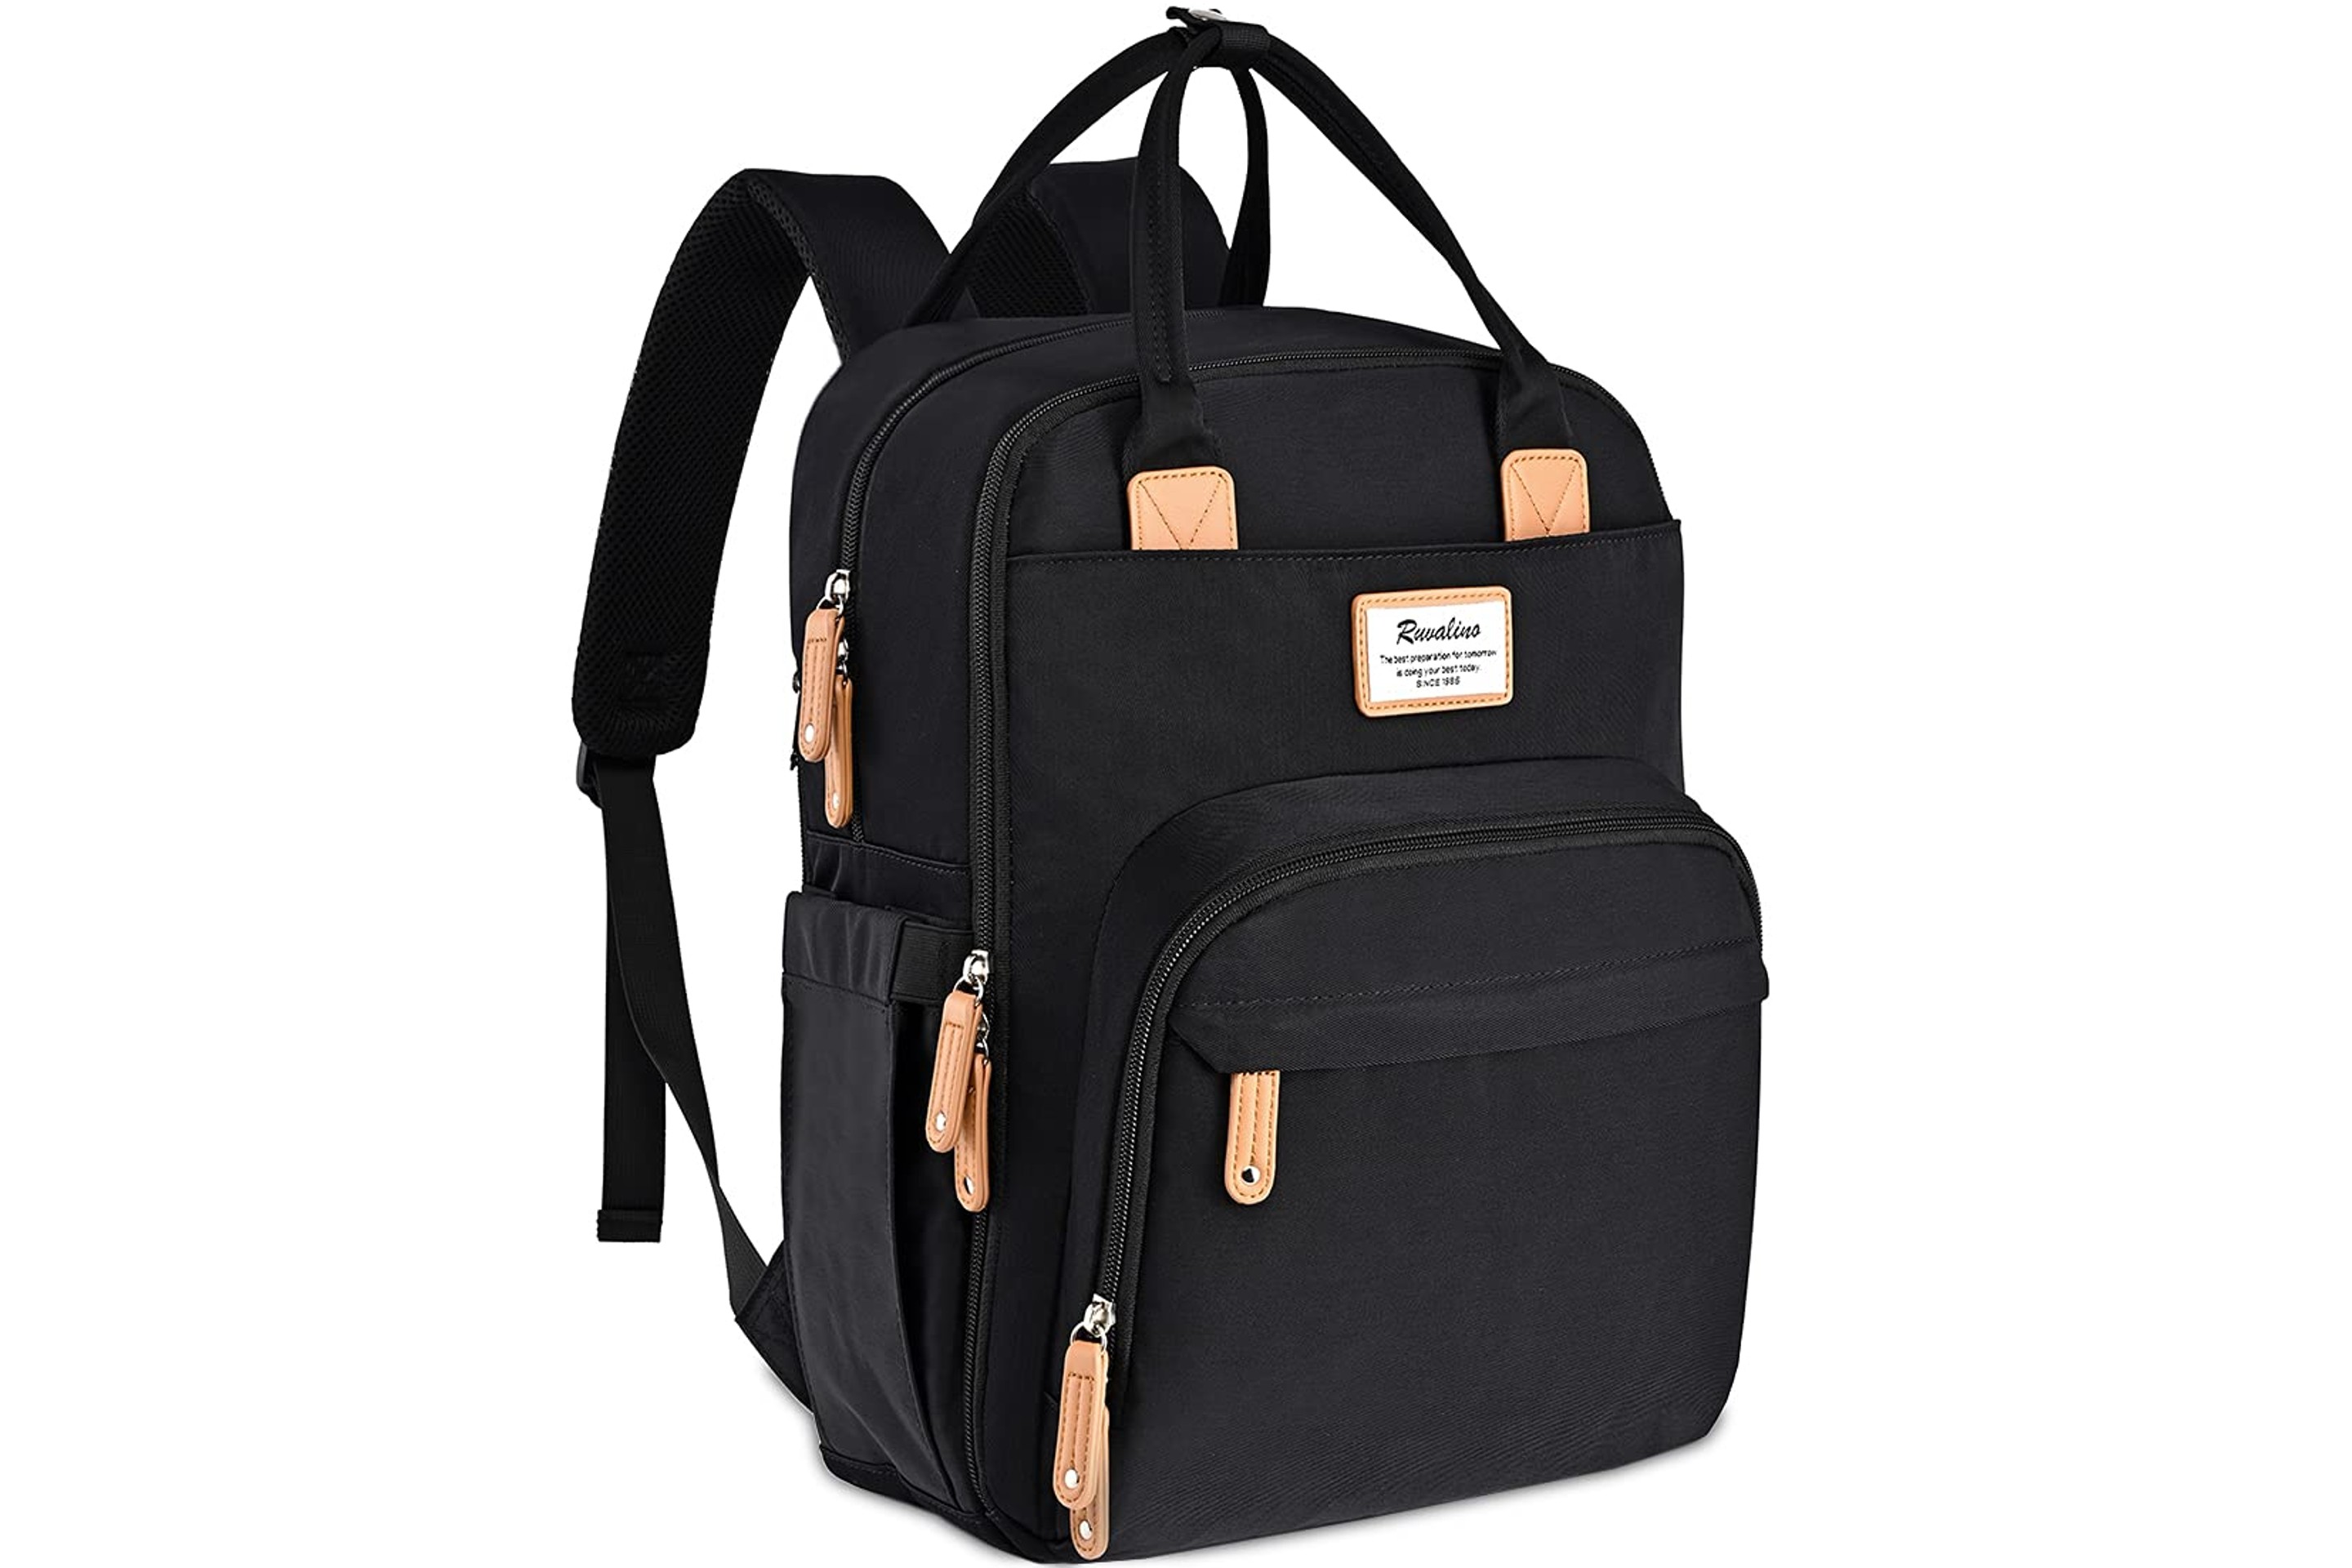 Ruvalino Black Diaper Bag Backpack